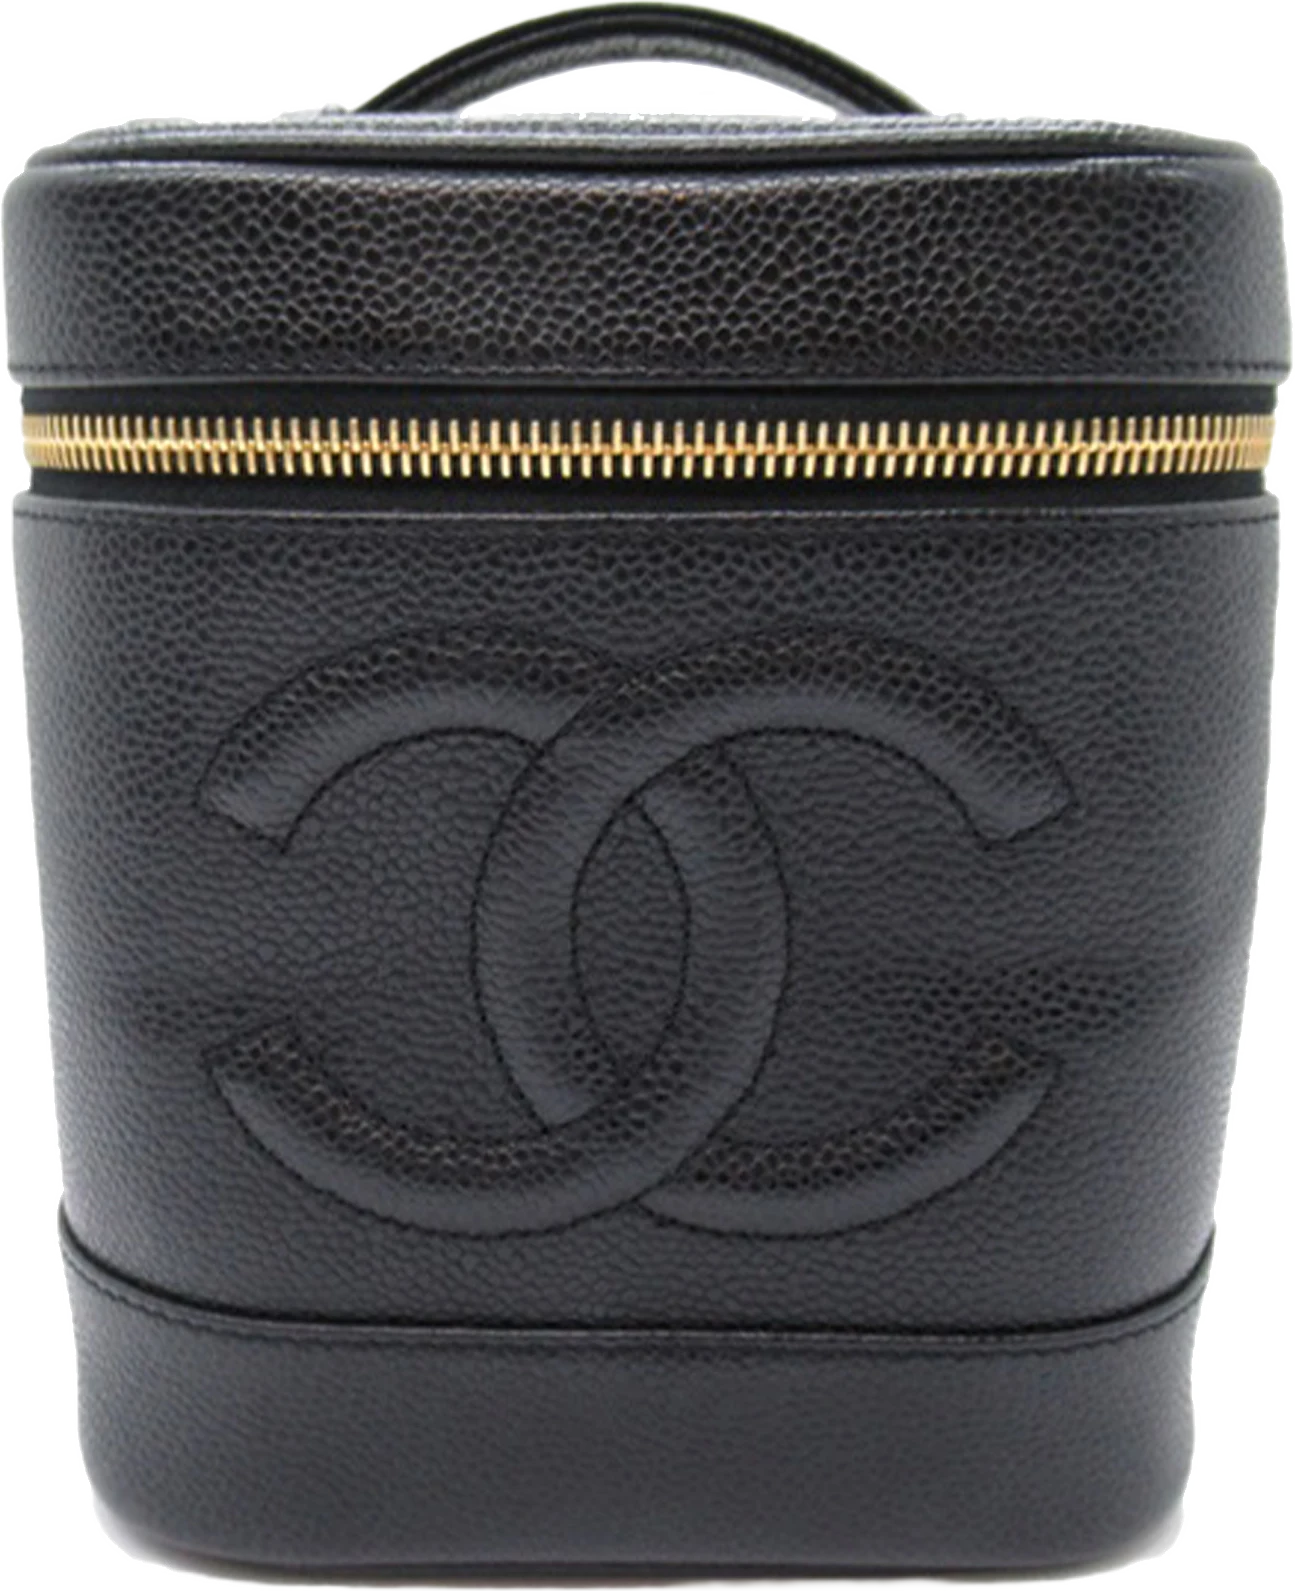 Chanel Cc Caviar Vanity Case